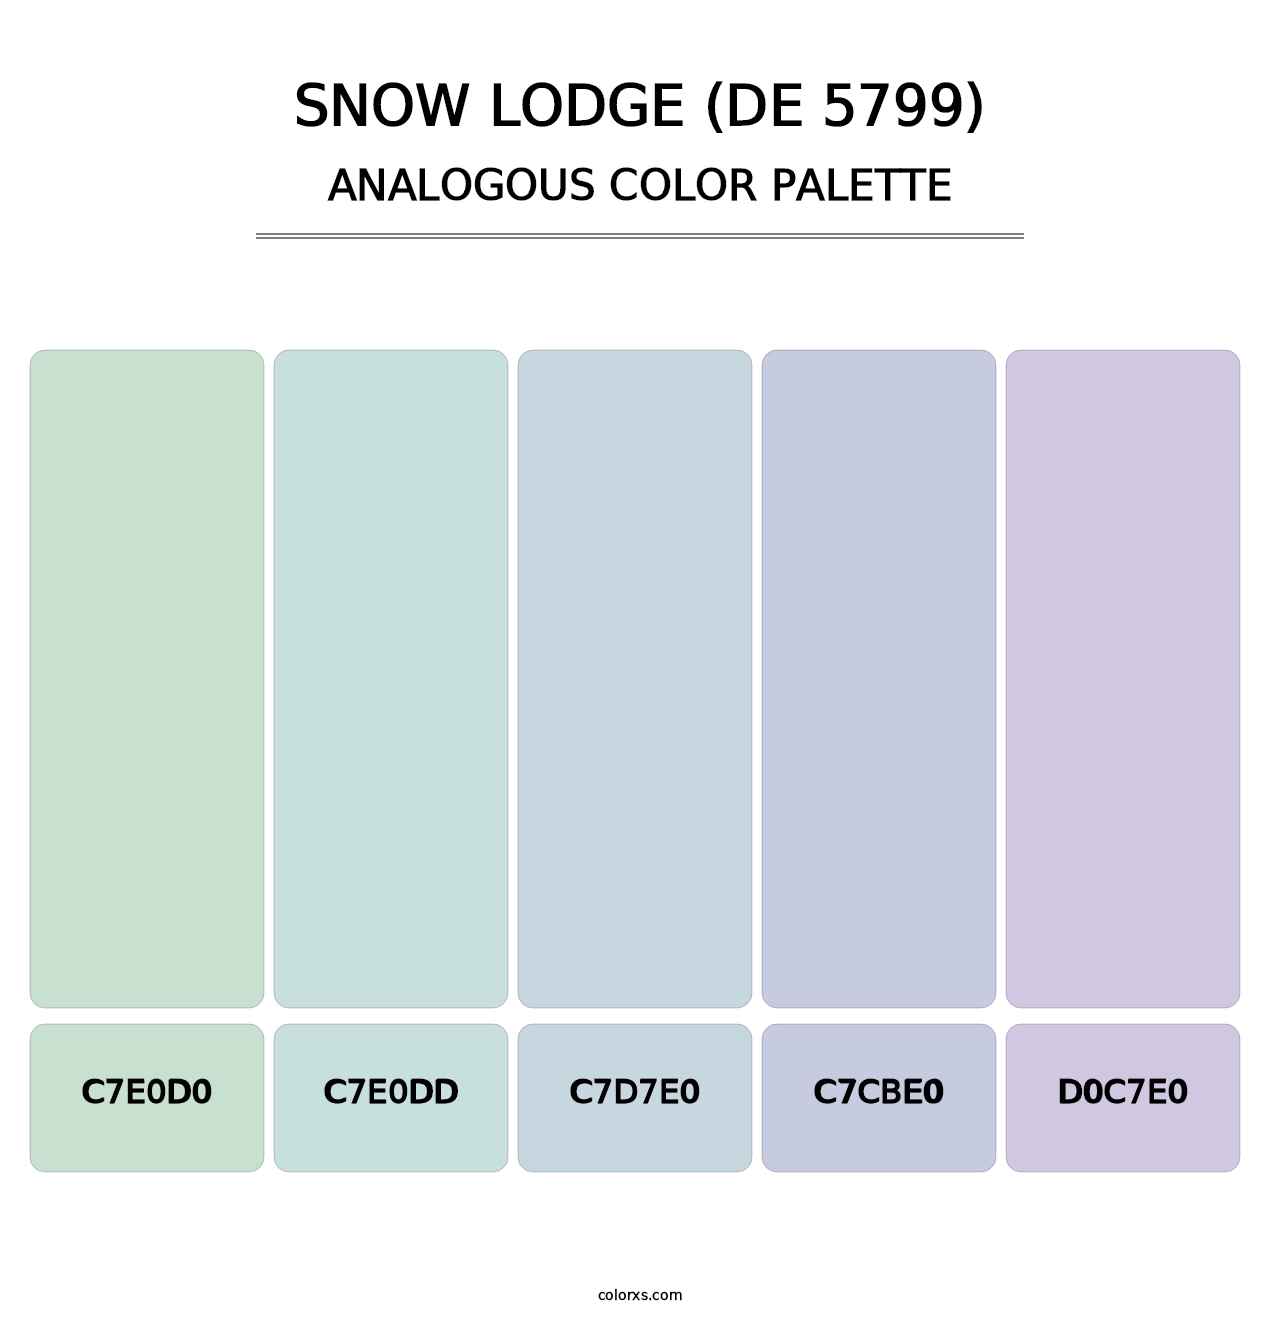 Snow Lodge (DE 5799) - Analogous Color Palette